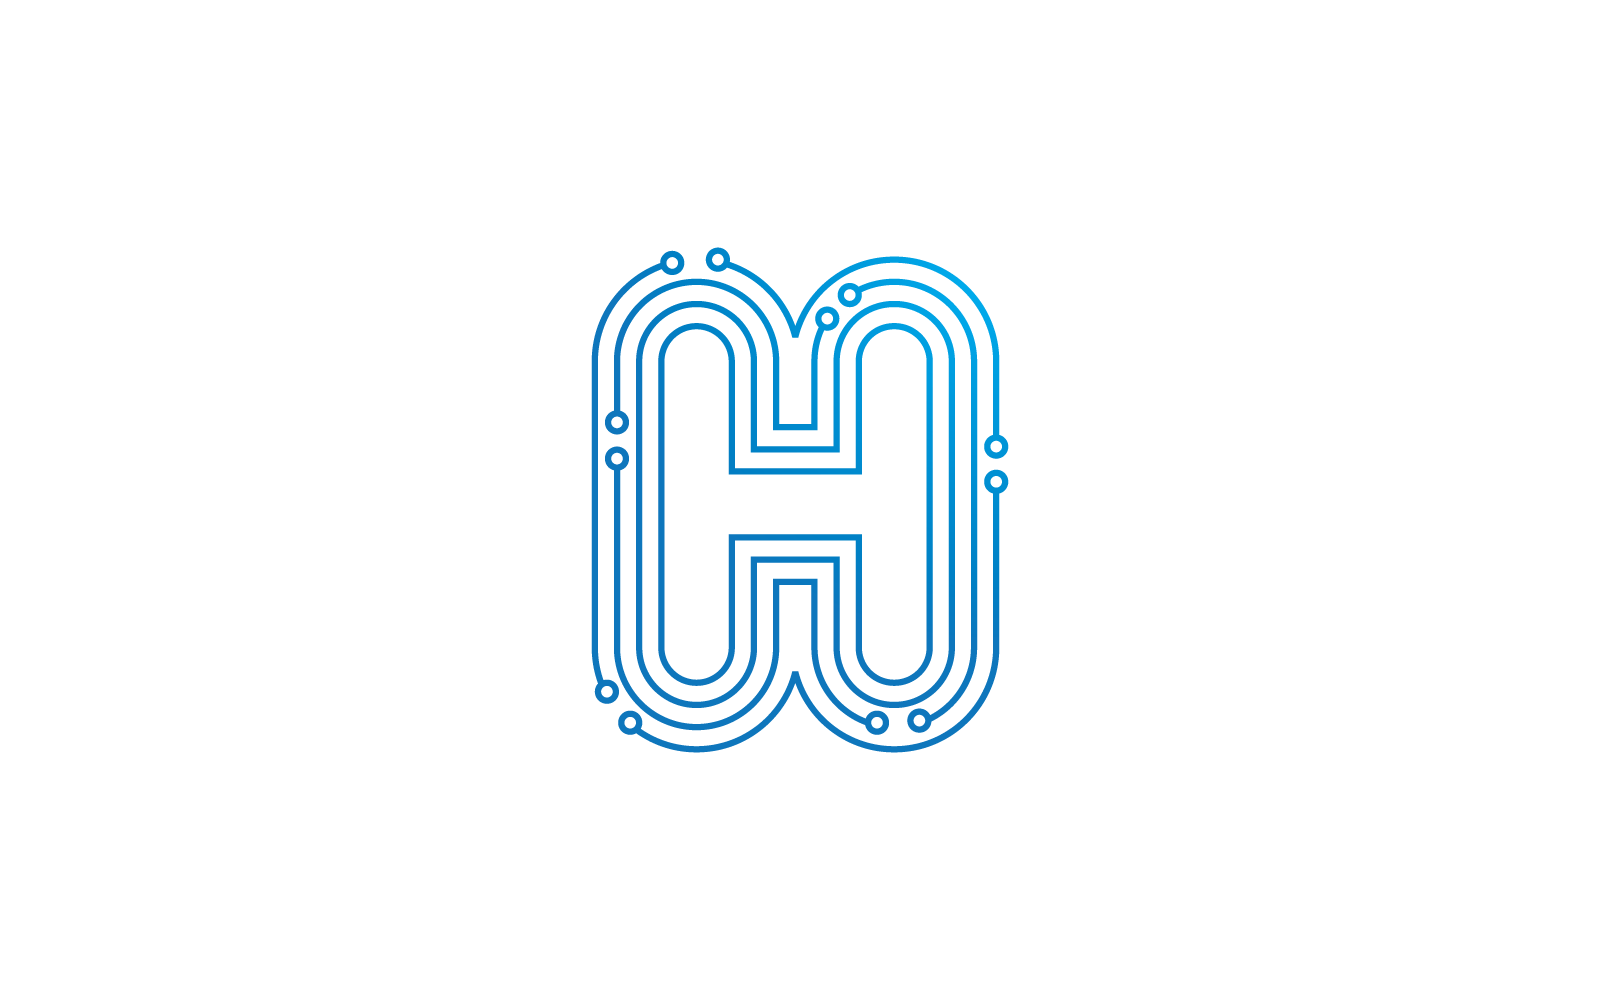 H首字母电路技术插图标志模型矢量